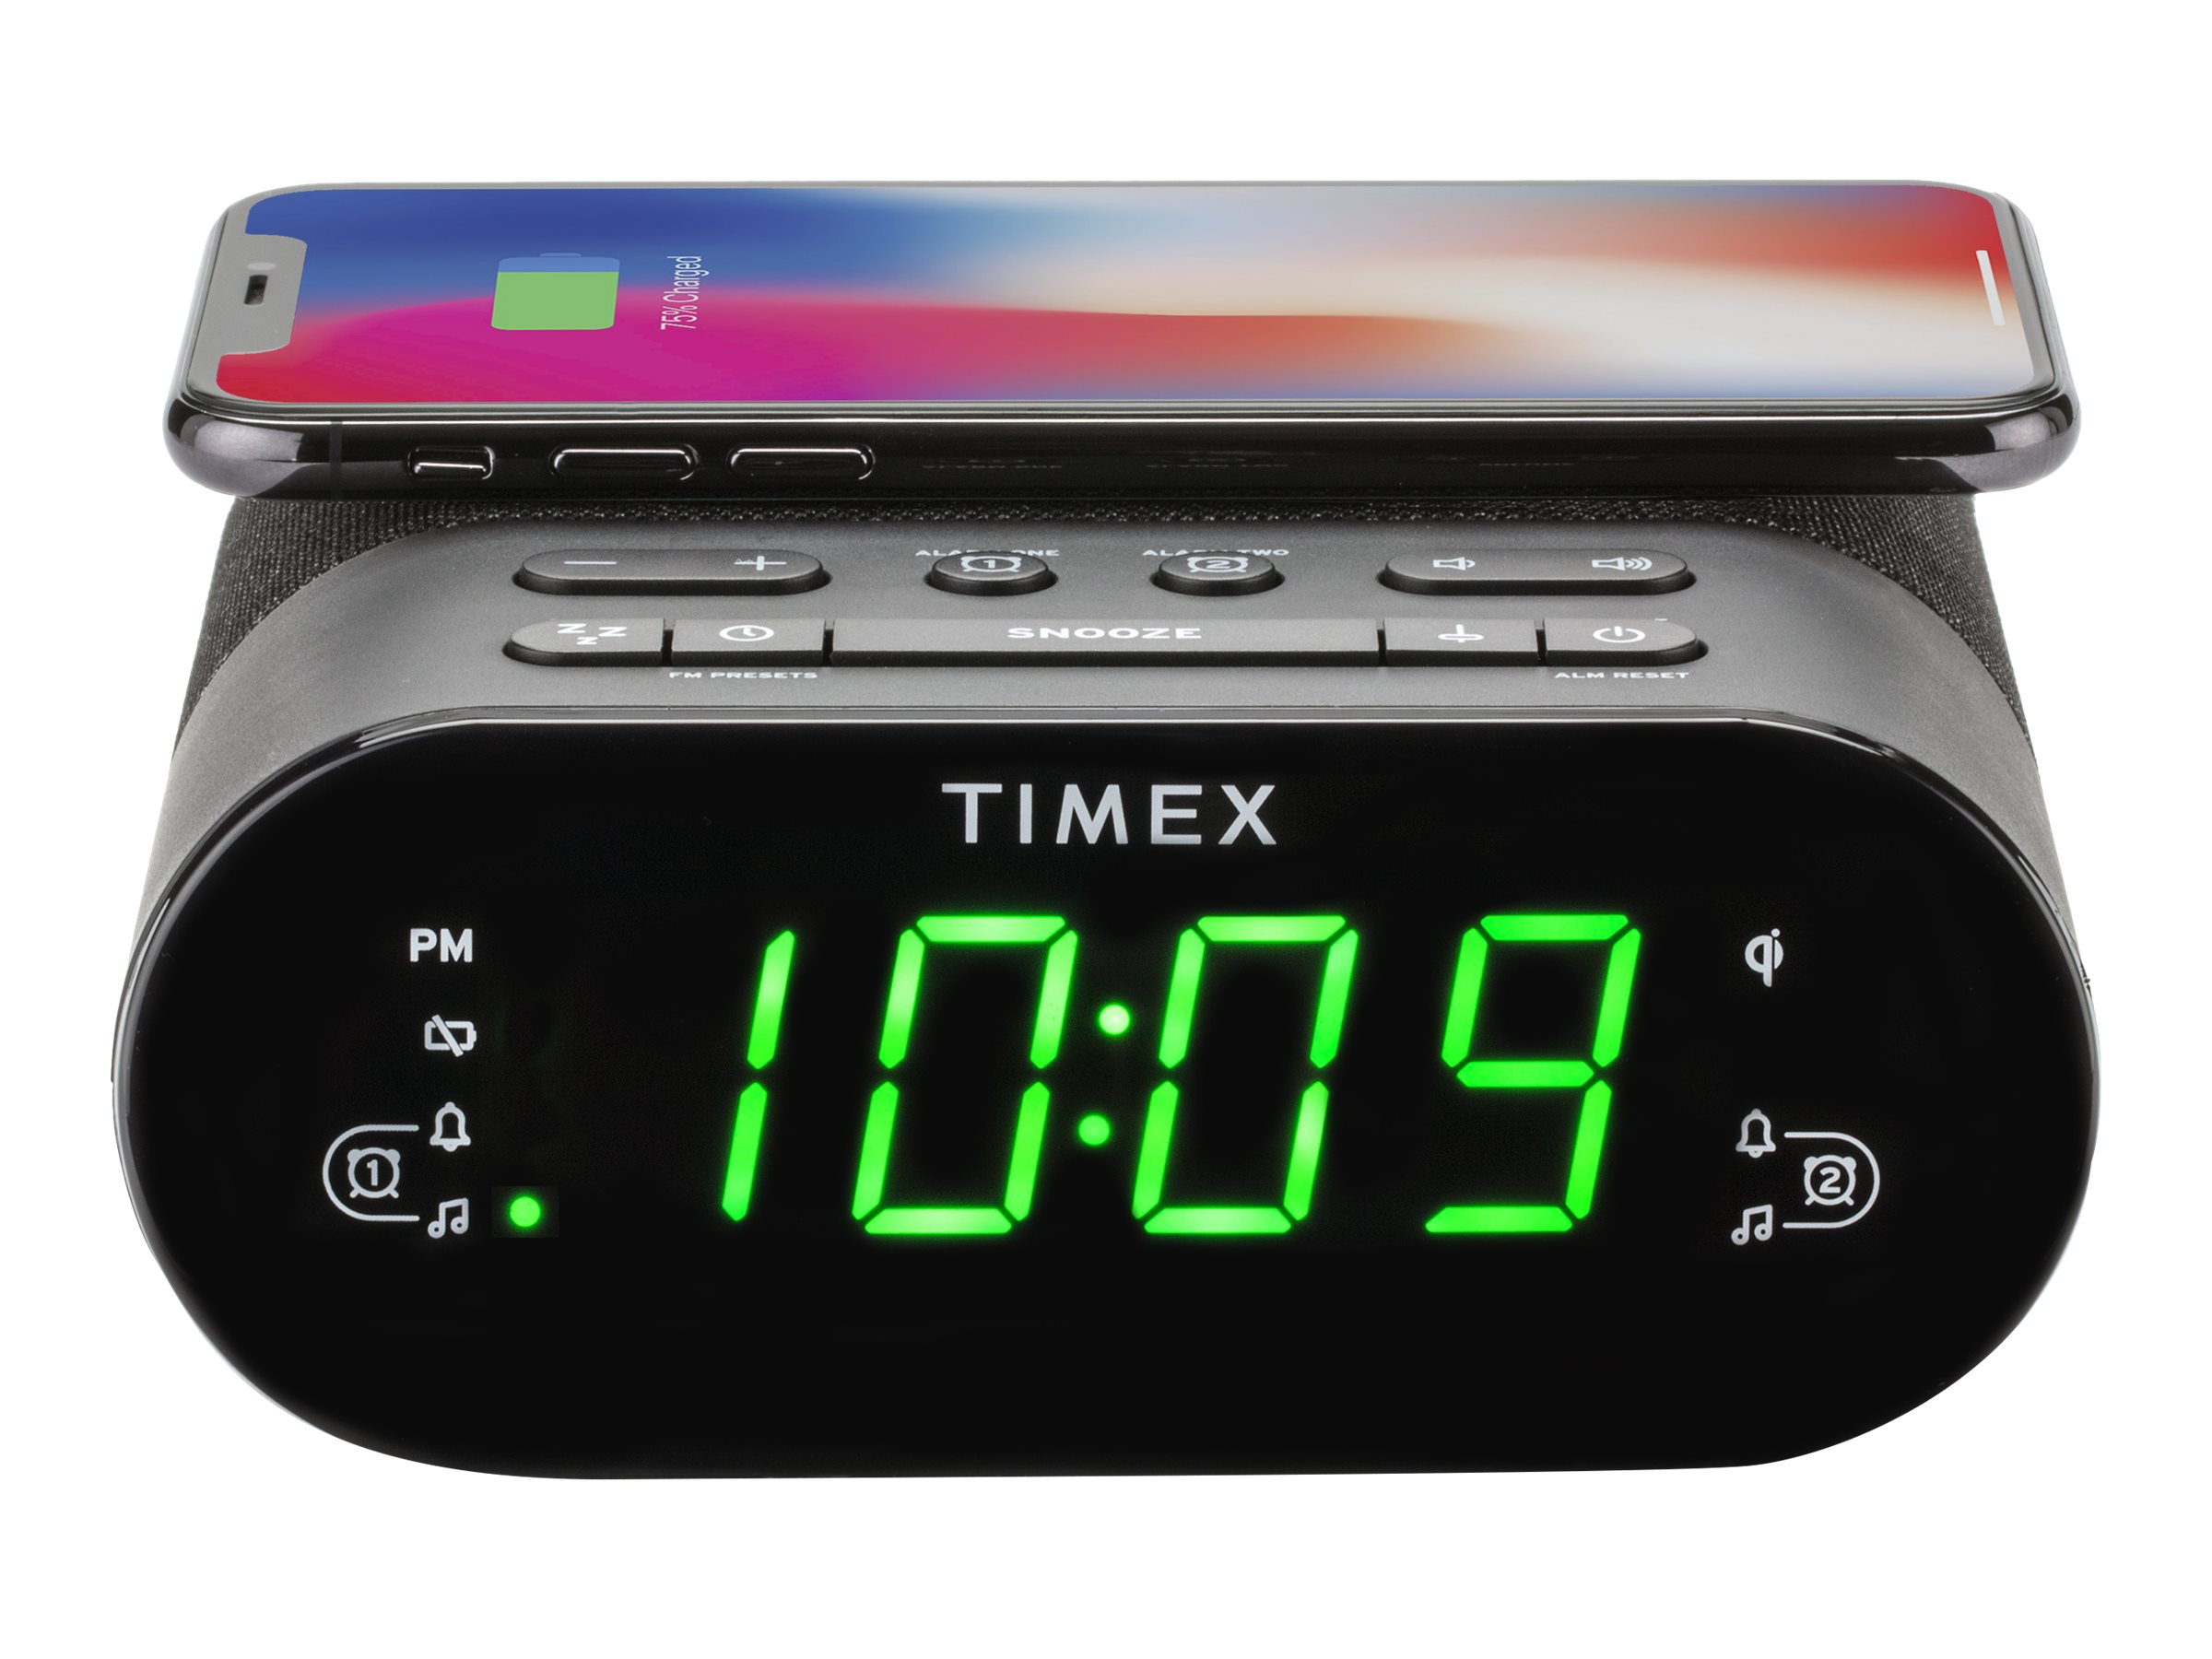 timex alarm clock walmart